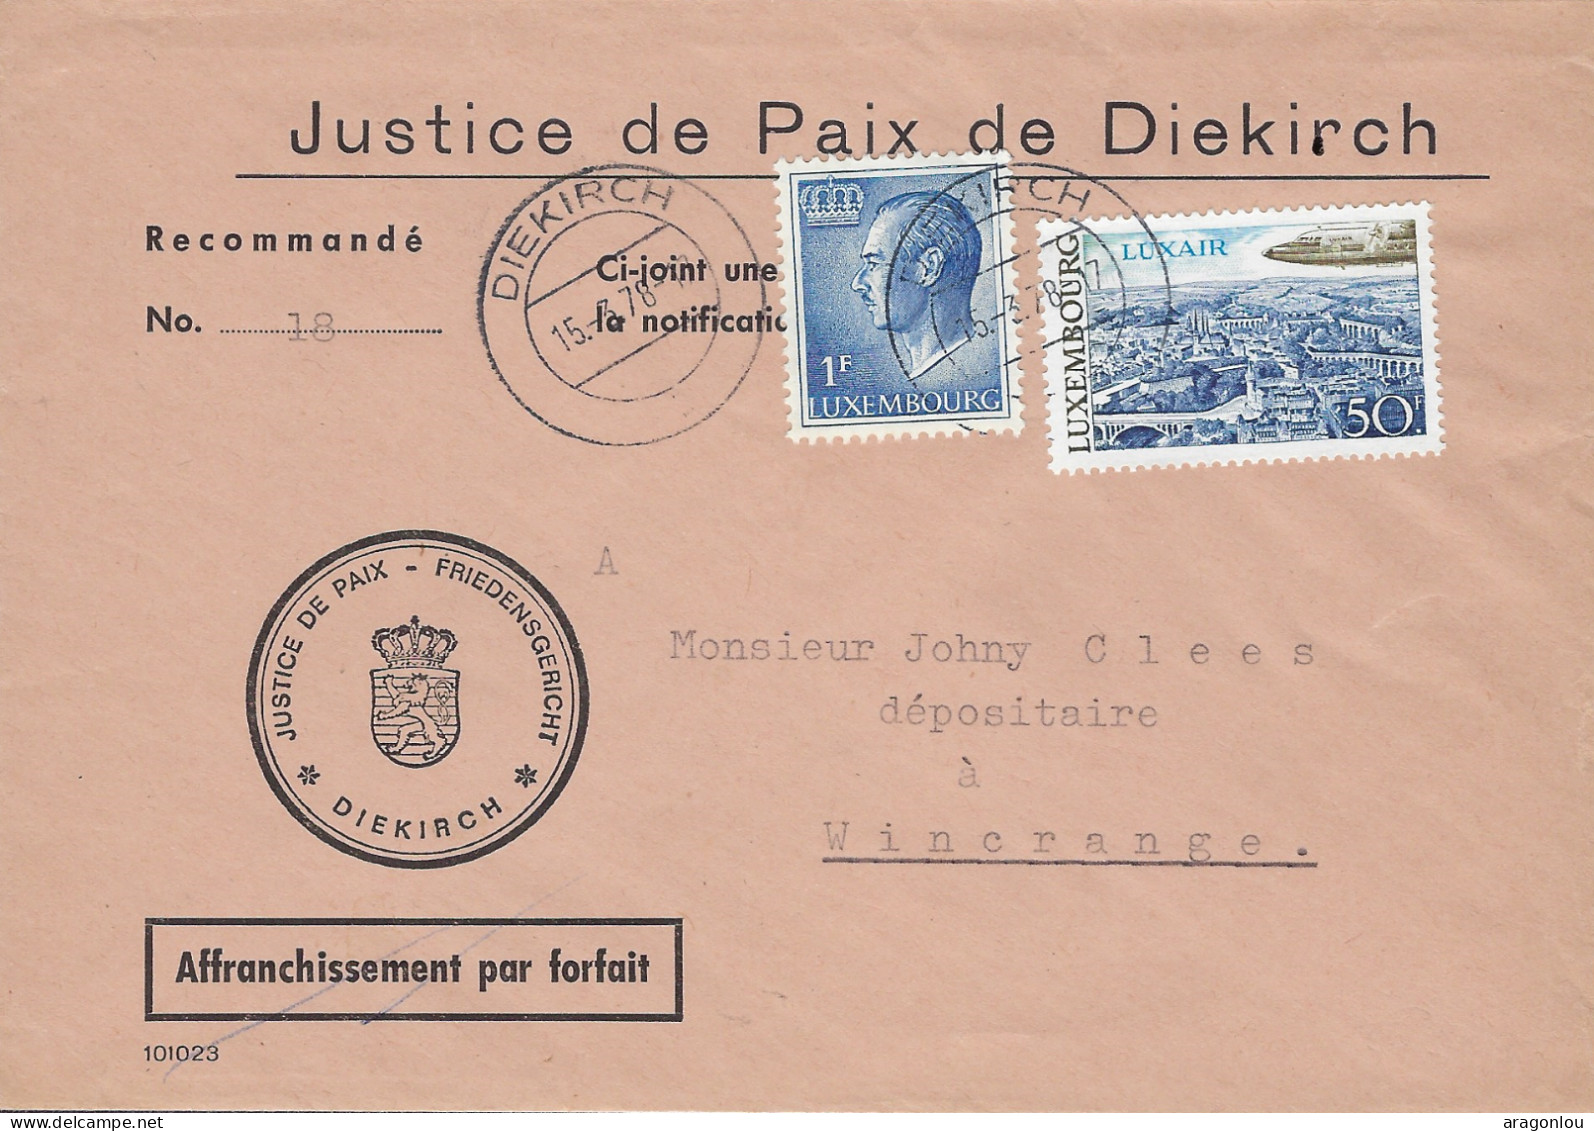 Luxembourg - Luxemburg - Lettre      1978  -  JUSTICE DE PAIX DE DIEKIRCH - Storia Postale